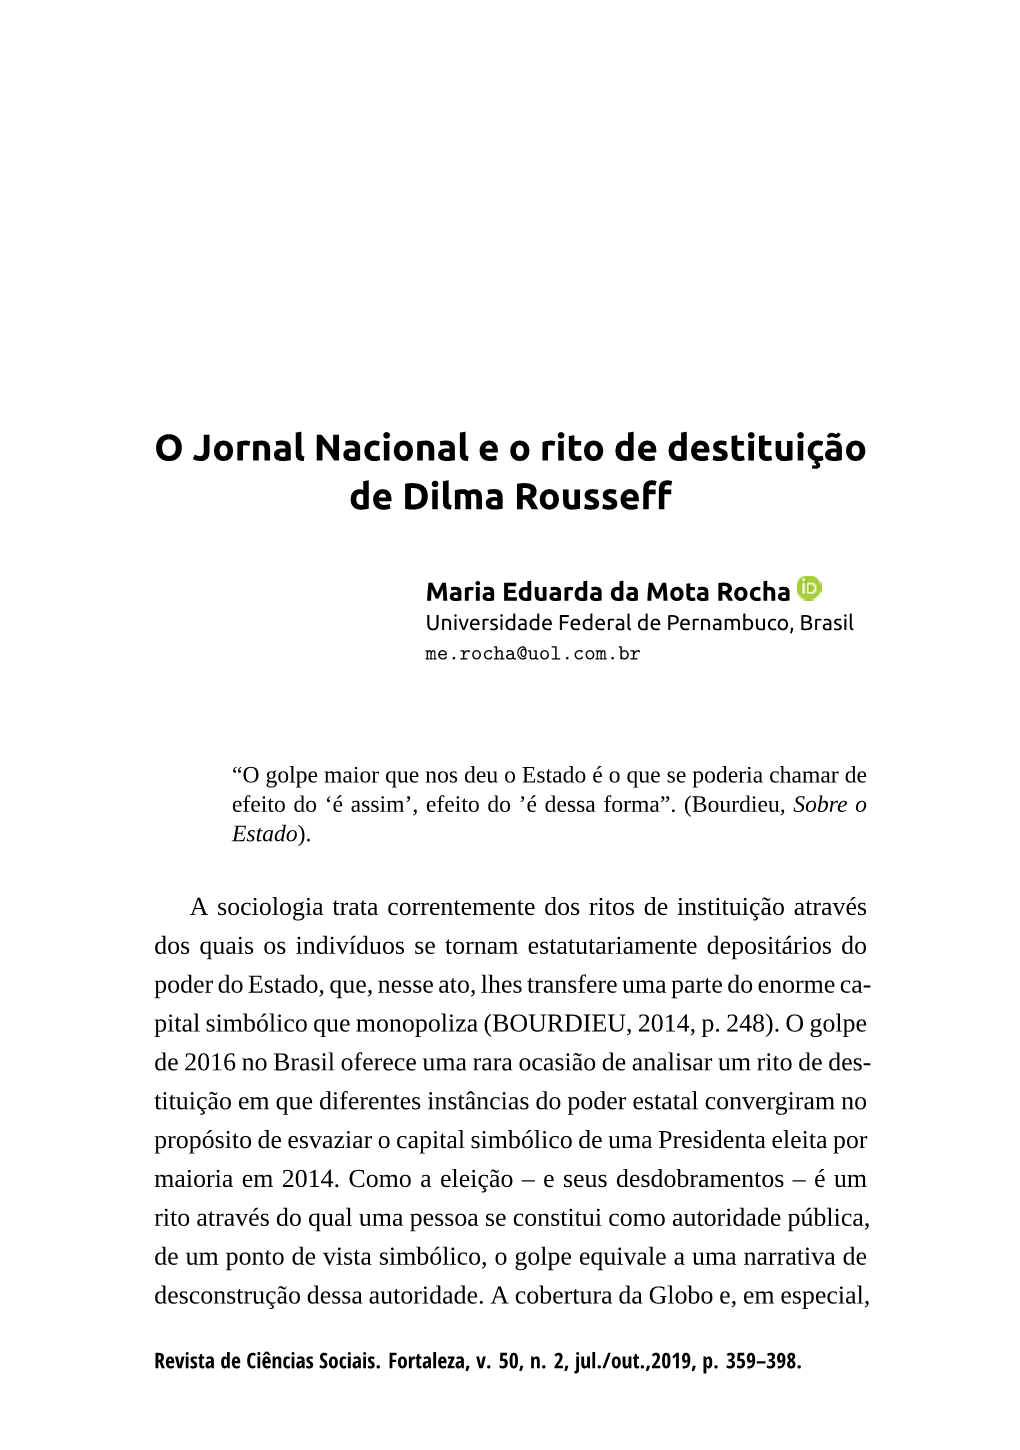 O Jornal Nacional E O Rito De Destituição De Dilma Rousseff